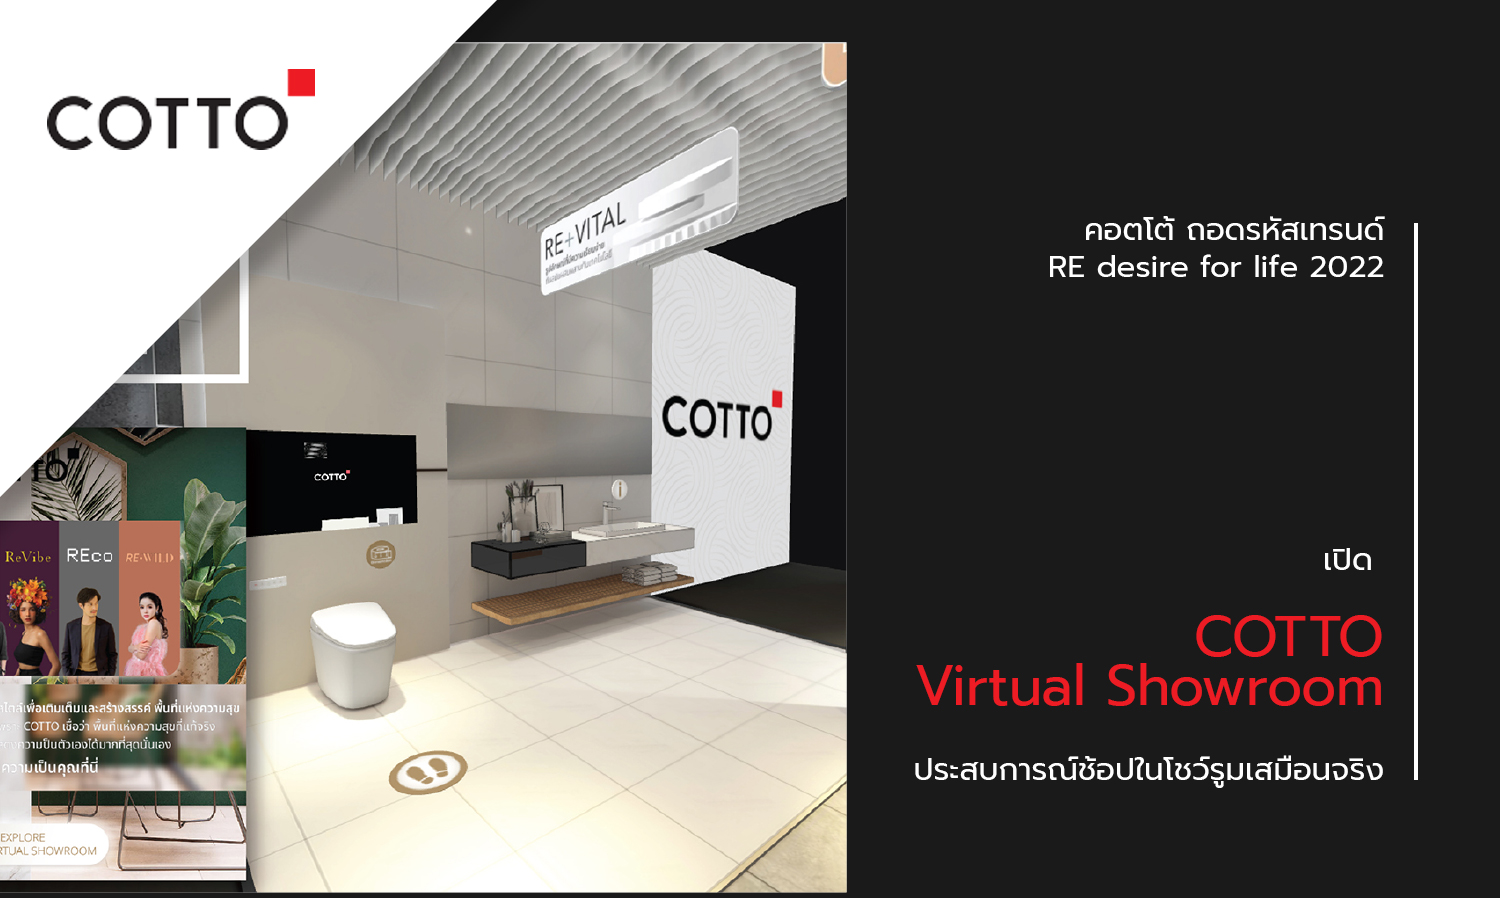 คอตโต้ ถอดรหัสเทรนด์ RE desire for life 2022 เปิด “COTTO Virtual Showroom” ประสบการณ์ช้อปในโชว์รูมเสมือนจริง